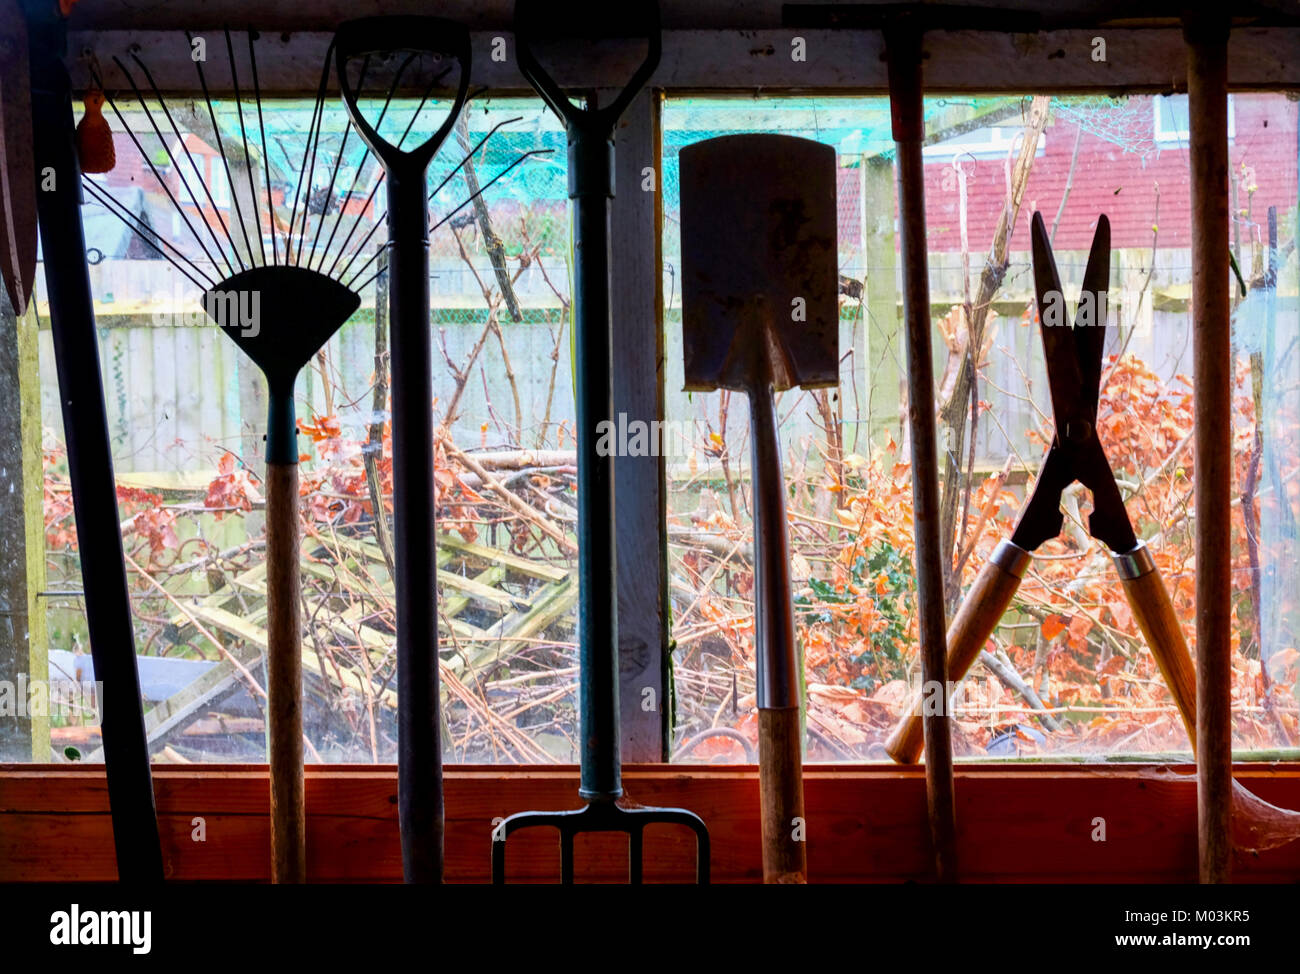 Outils de jardin de raccrocher dans un hangar, les outils sont sillouetted par la fenêtre et vue de l'abri de jardin derrière, bêche, fourche, cisailles, etc. Banque D'Images